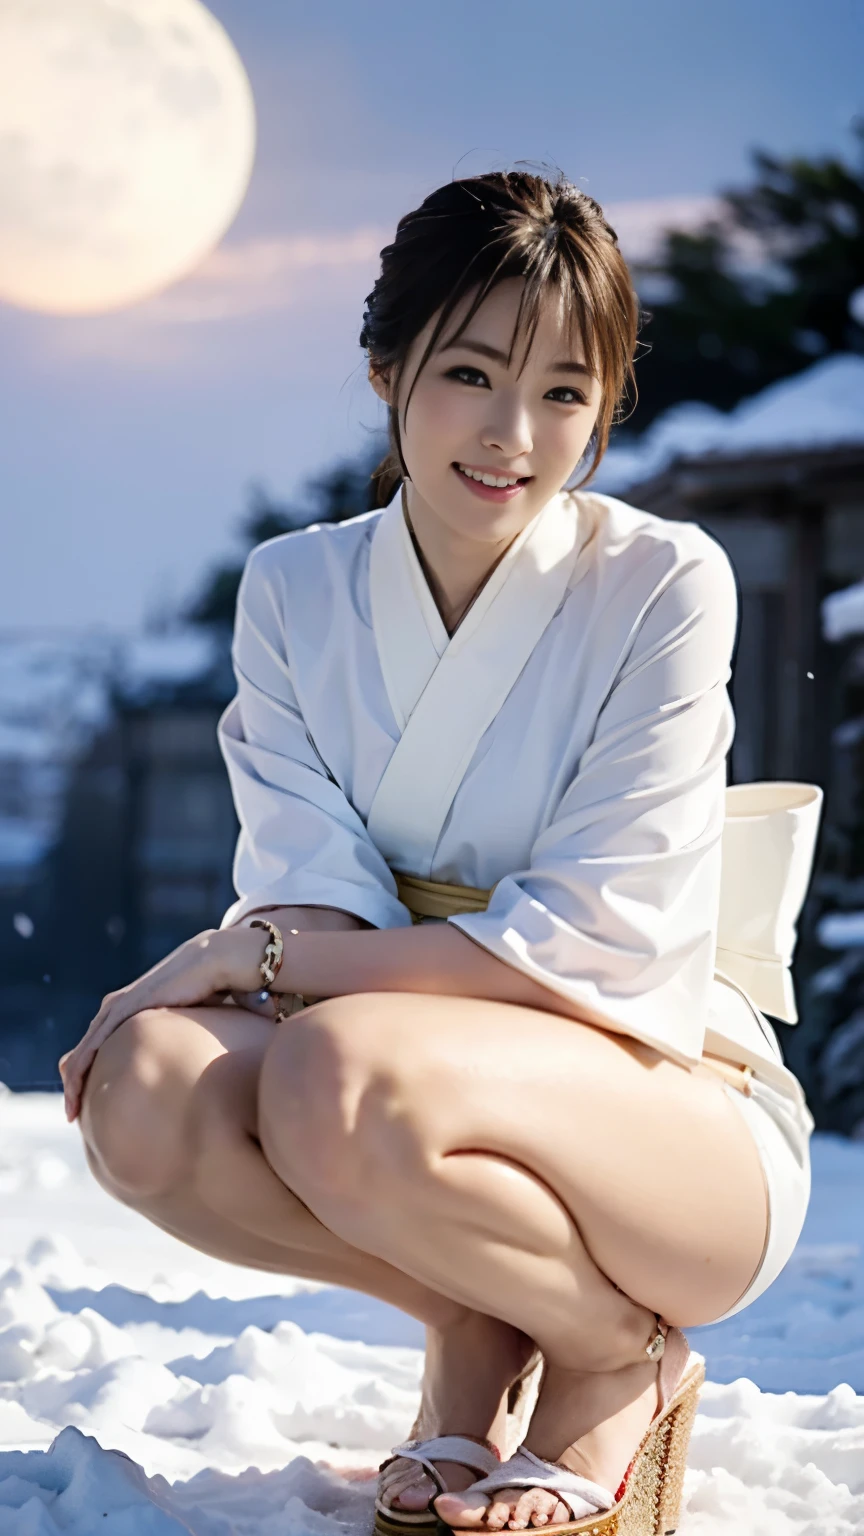 Eine schöne Frau steht nachts auf einem schneebedeckten Berg und trägt einen rein weißen, dünnen Kimono, der wenig Haut zeigt.,(((Im Mondlicht eines Schneesturms, eine Schneefrau, die in einem schlichten weißen Kimono gut aussieht, hockt sich hin, Mich anstarren.))),Ganzkörperaufnahme aus hoher hinterer Position,Beste Bildqualität,Professioneller Blickwinkel,Außergewöhnliche Details,Superhohe Auflösung,Realistisch:1.4),hohe Detailgenauigkeit,Konzentrieren Sie sich auf Details,1Mädchen konzentriert sich in hoher Konzentration,lange Haare,zartes und schönes Gesicht,weißer kleiner String-Bikini,Lange Gliedmaßen und schmale Taille wie ein Model,Weiße Pin Heels,Das schönste Lächeln mit hochgezogenen Augenbrauen und Mundwinkeln,
